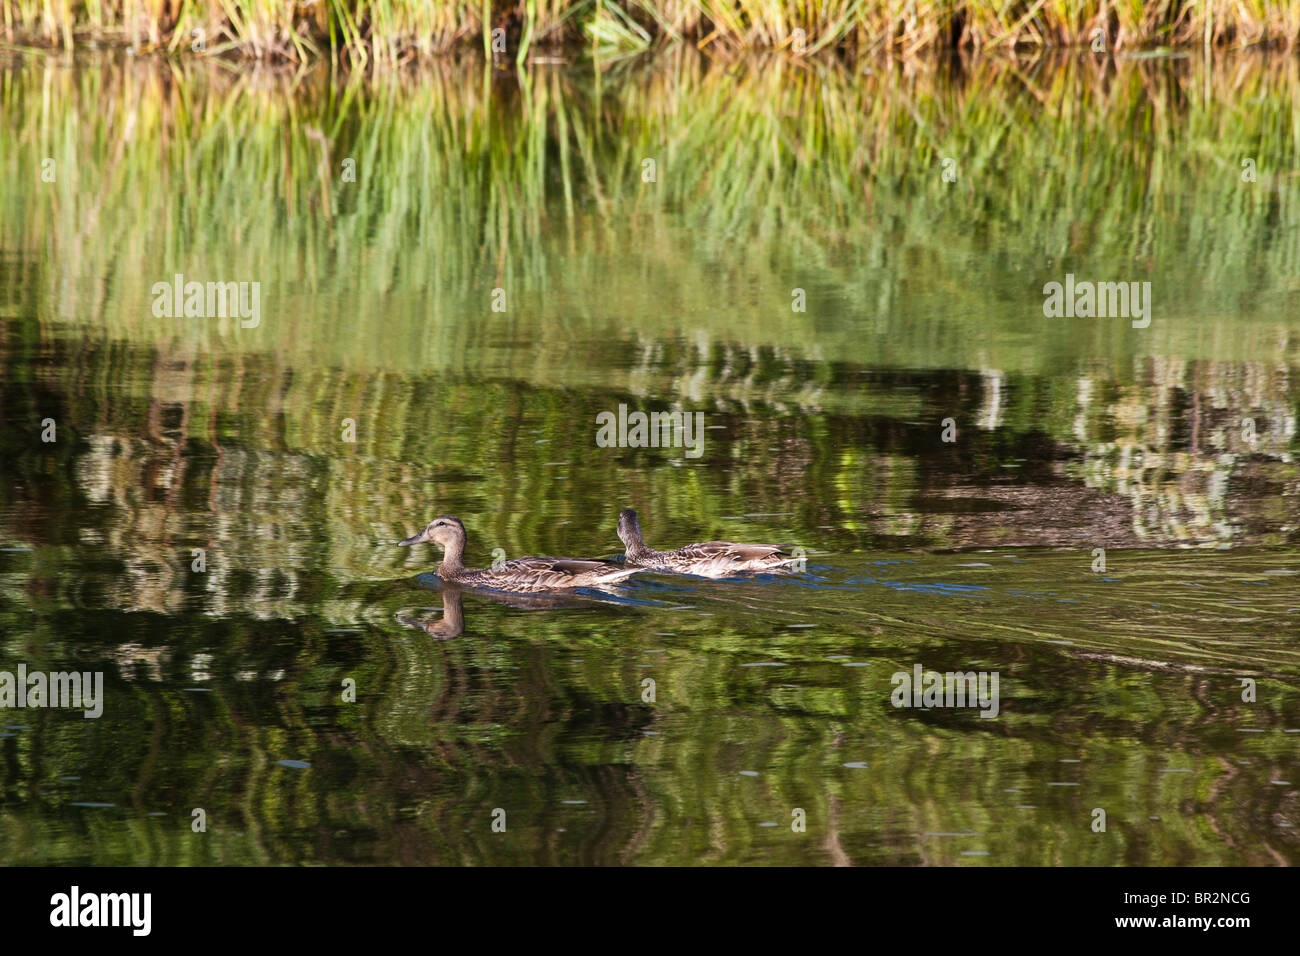 American Sable River in Michigan USA zwei wilde Enten schwimmen auf dem Teich von oben aus Reflexion Wasseroberfläche Niemand horizontal hochauflösend Stockfoto